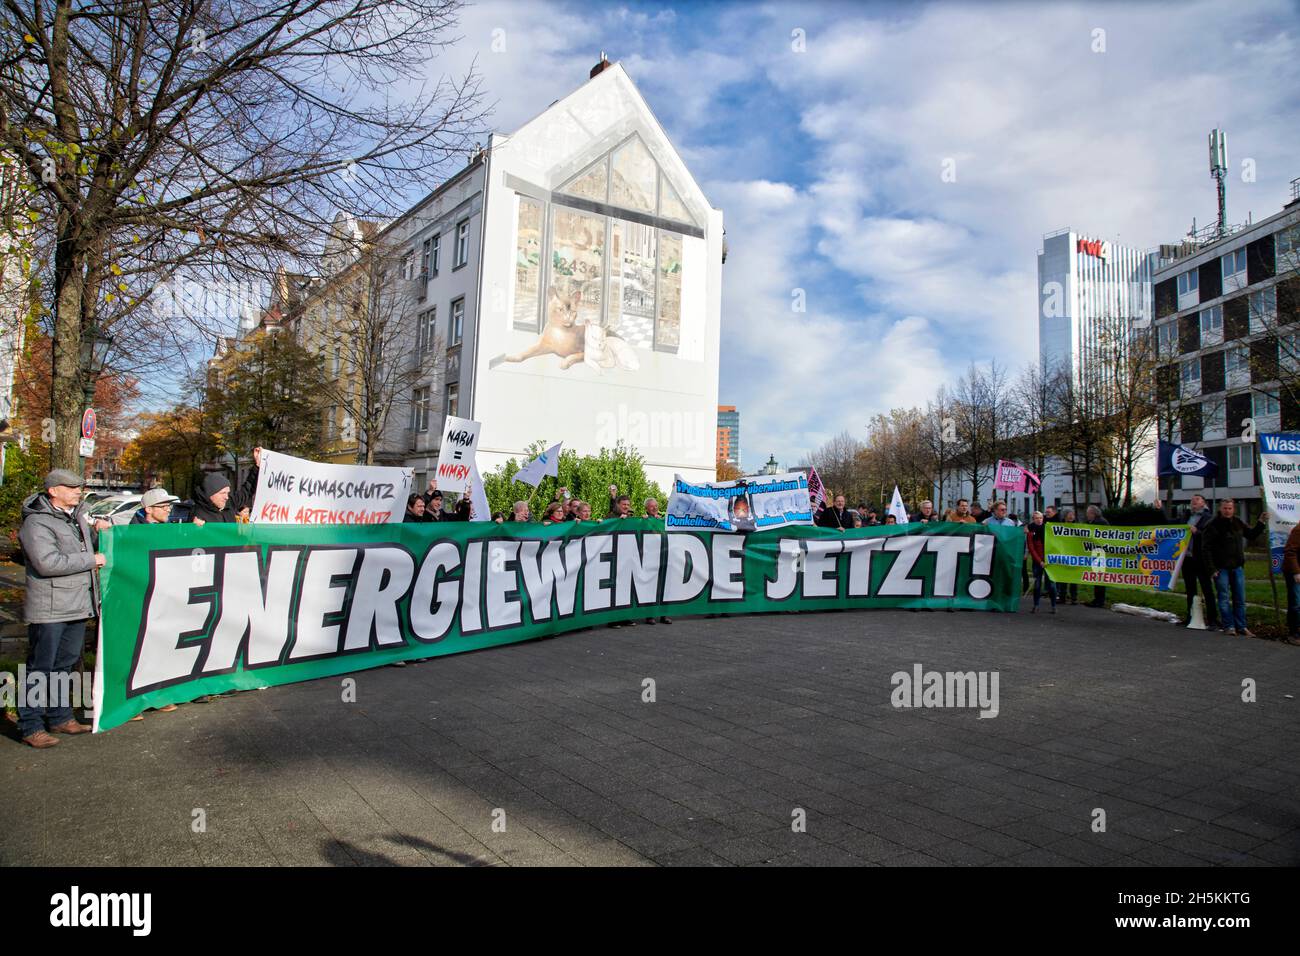 Der Landesverband Erneuerbare Energien NRW demonstriert gegen die, aus ihren Augen, Klagewelle gegen Windkraftalagen des NABU-NRW. Stock Photo